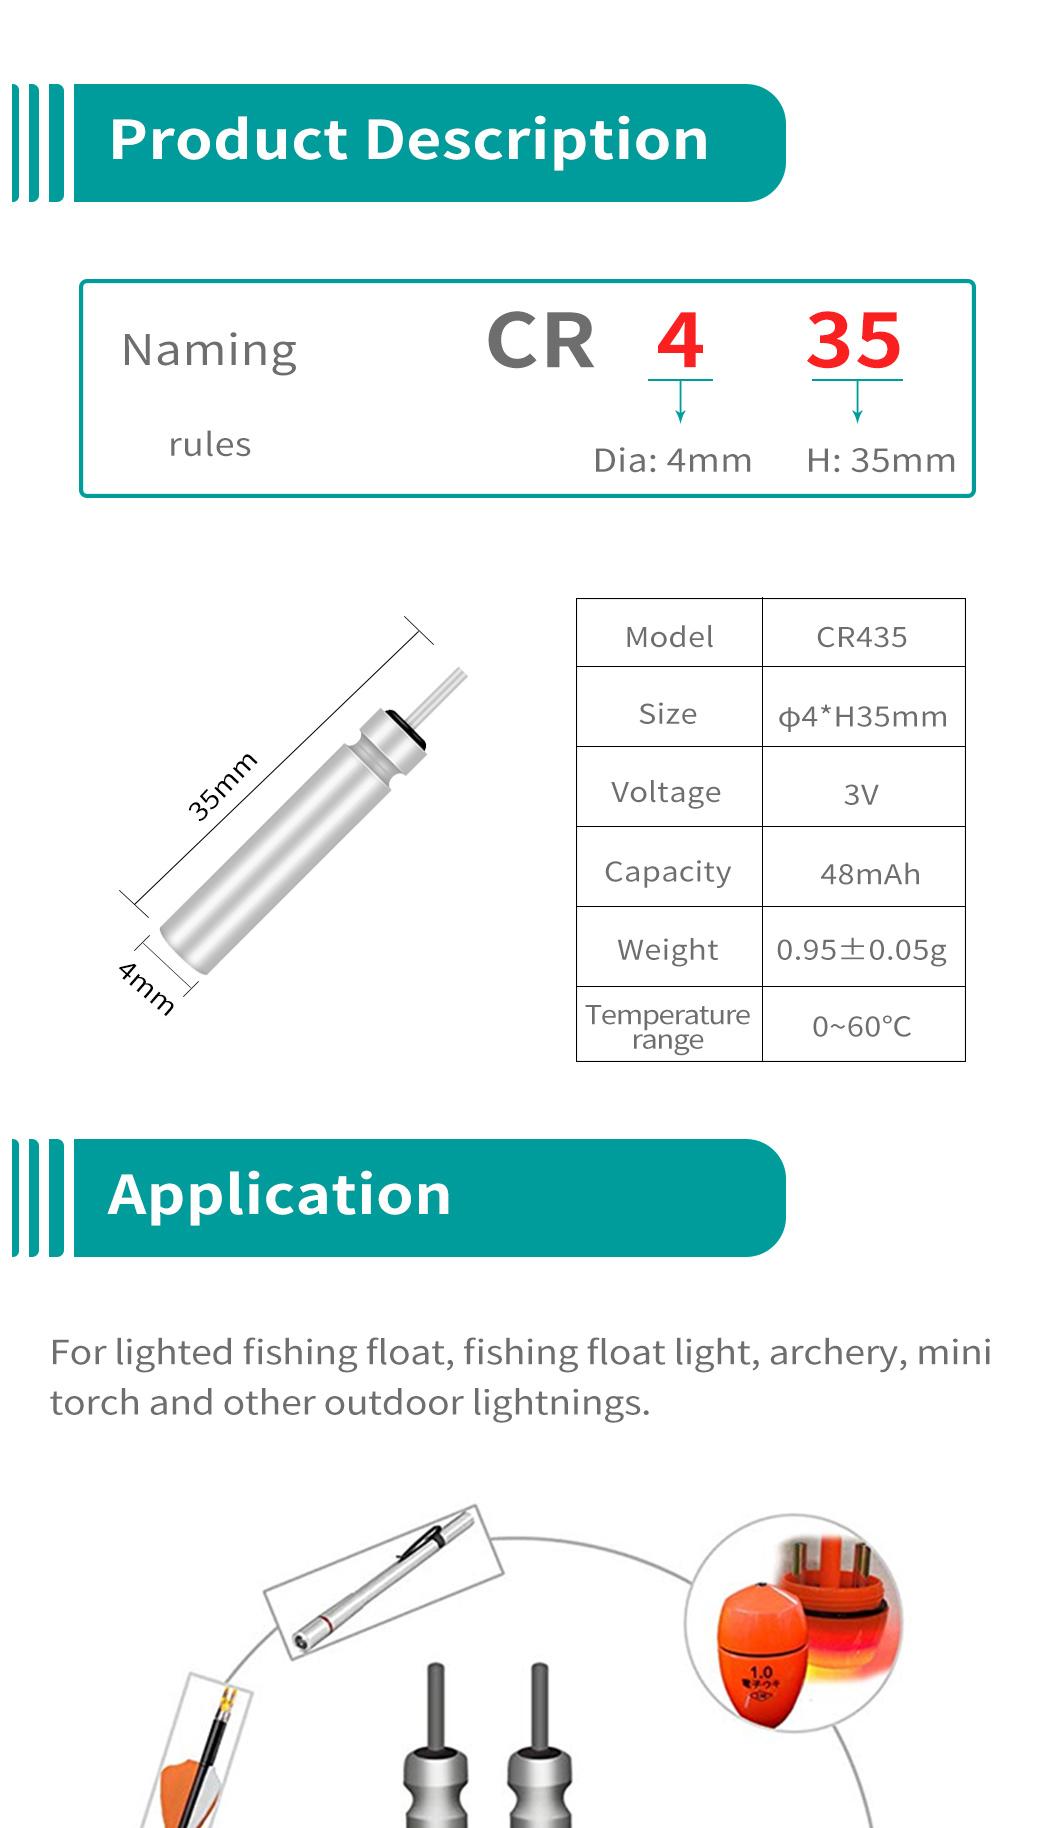 Dlyfull 3V Cr435 Pin Type Battery for Night Fishing Waterproof Battery